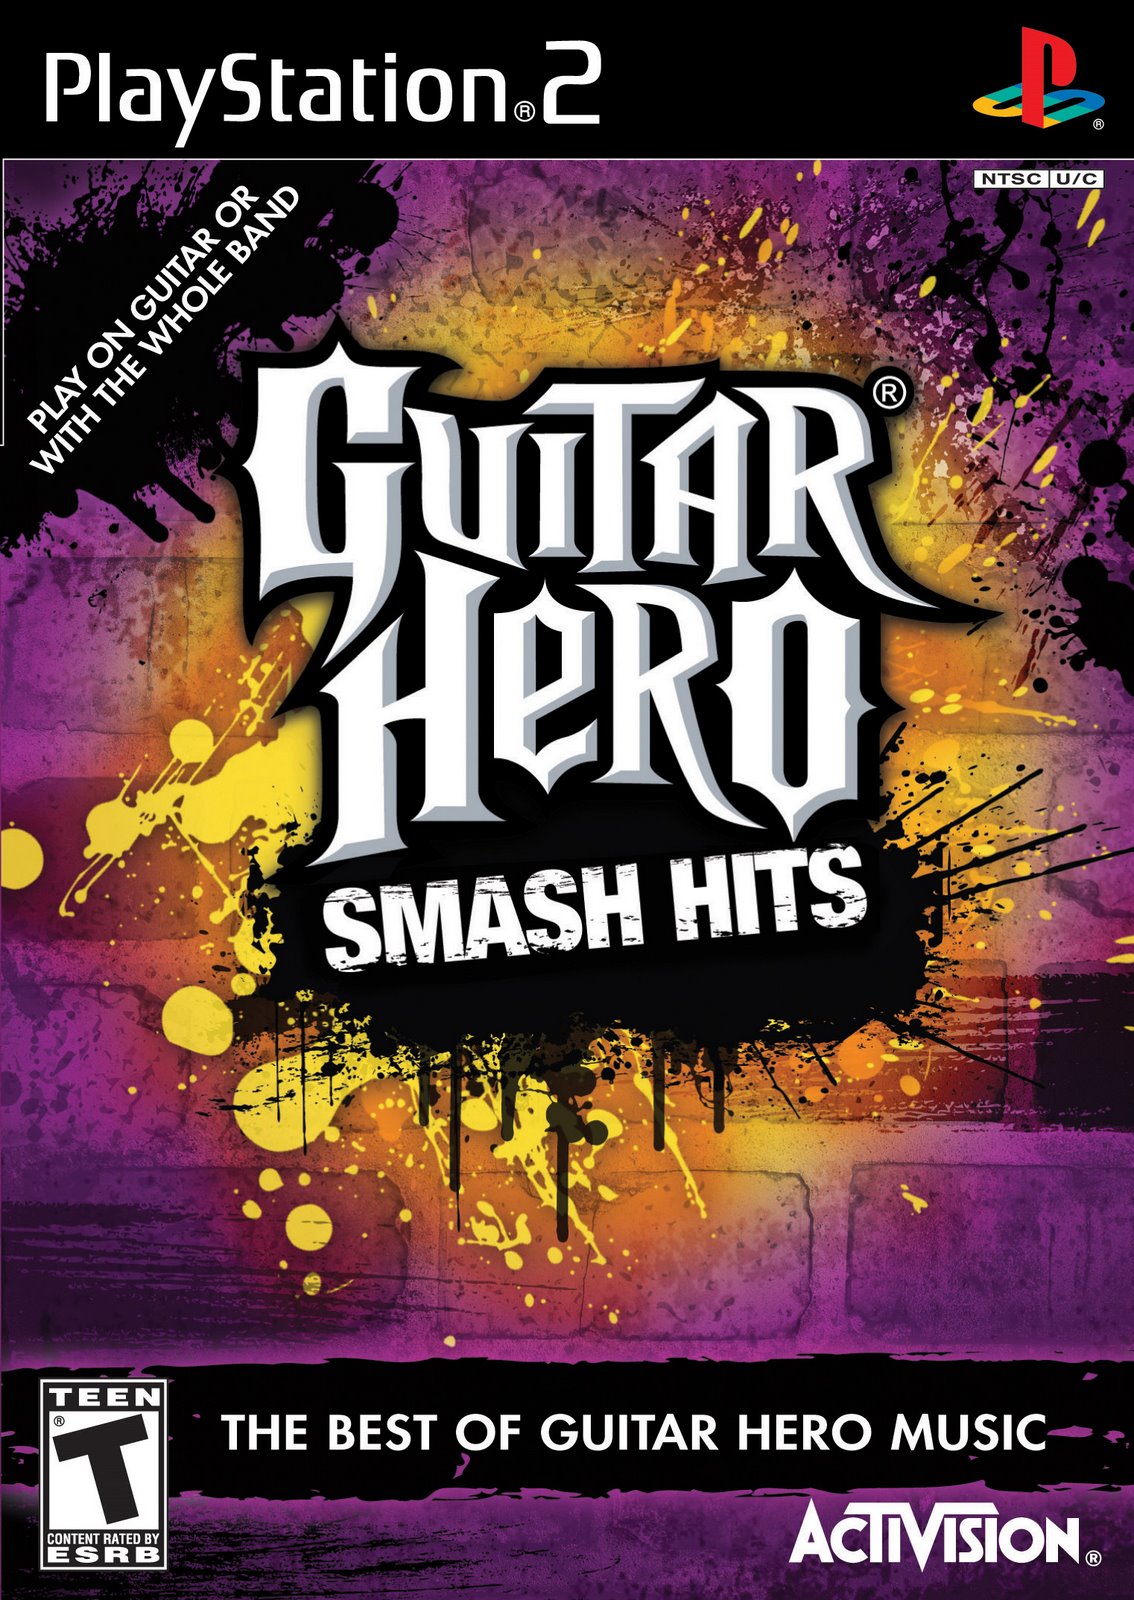 [guitar-hero-smash-hits.jpg]